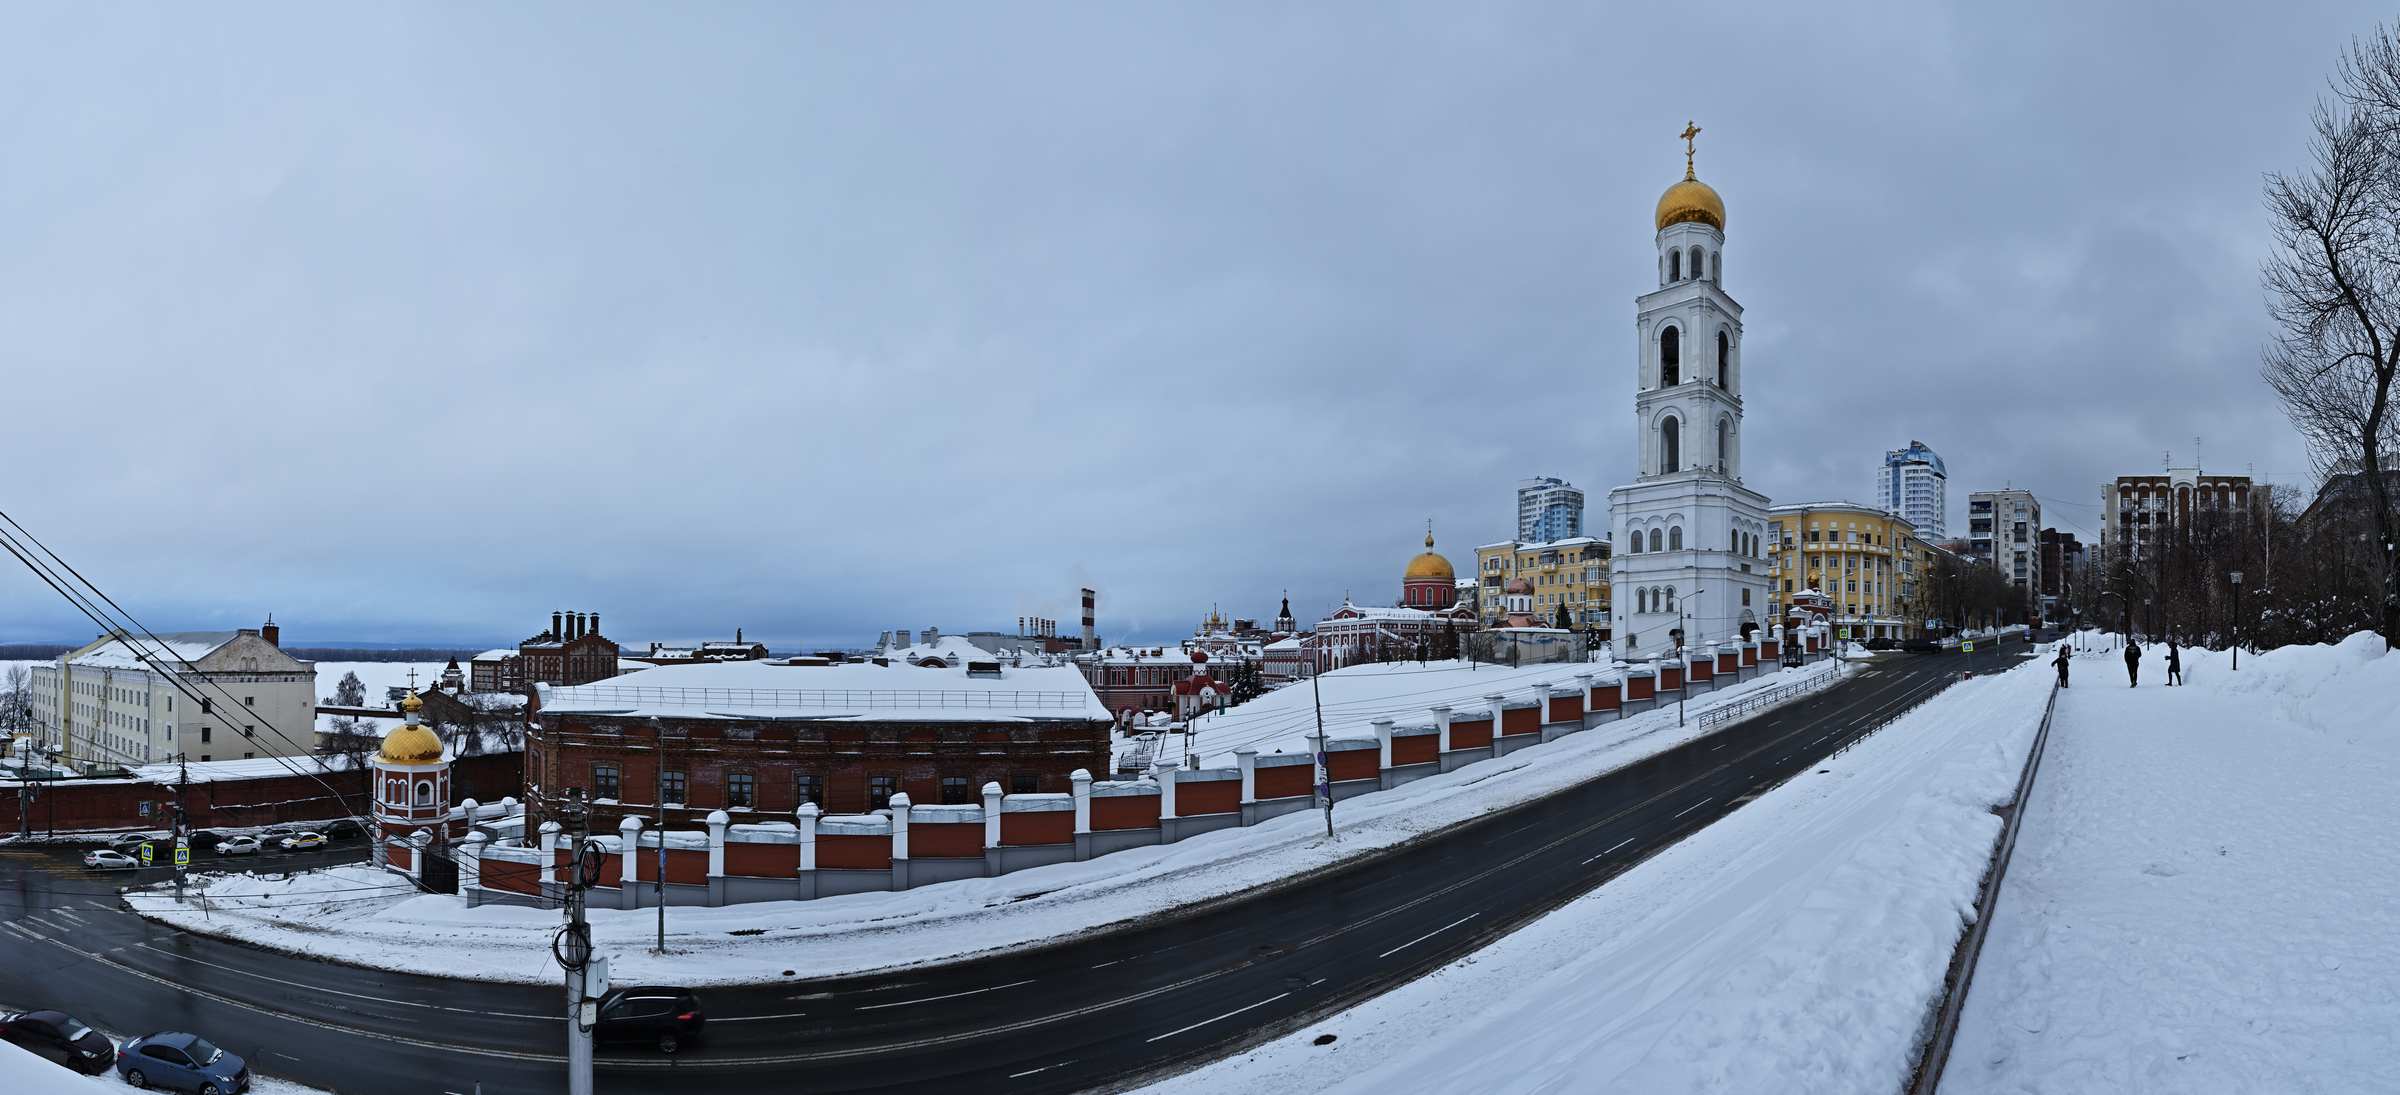 Самара со смотровой площадки в сквере Пушкина зимой.